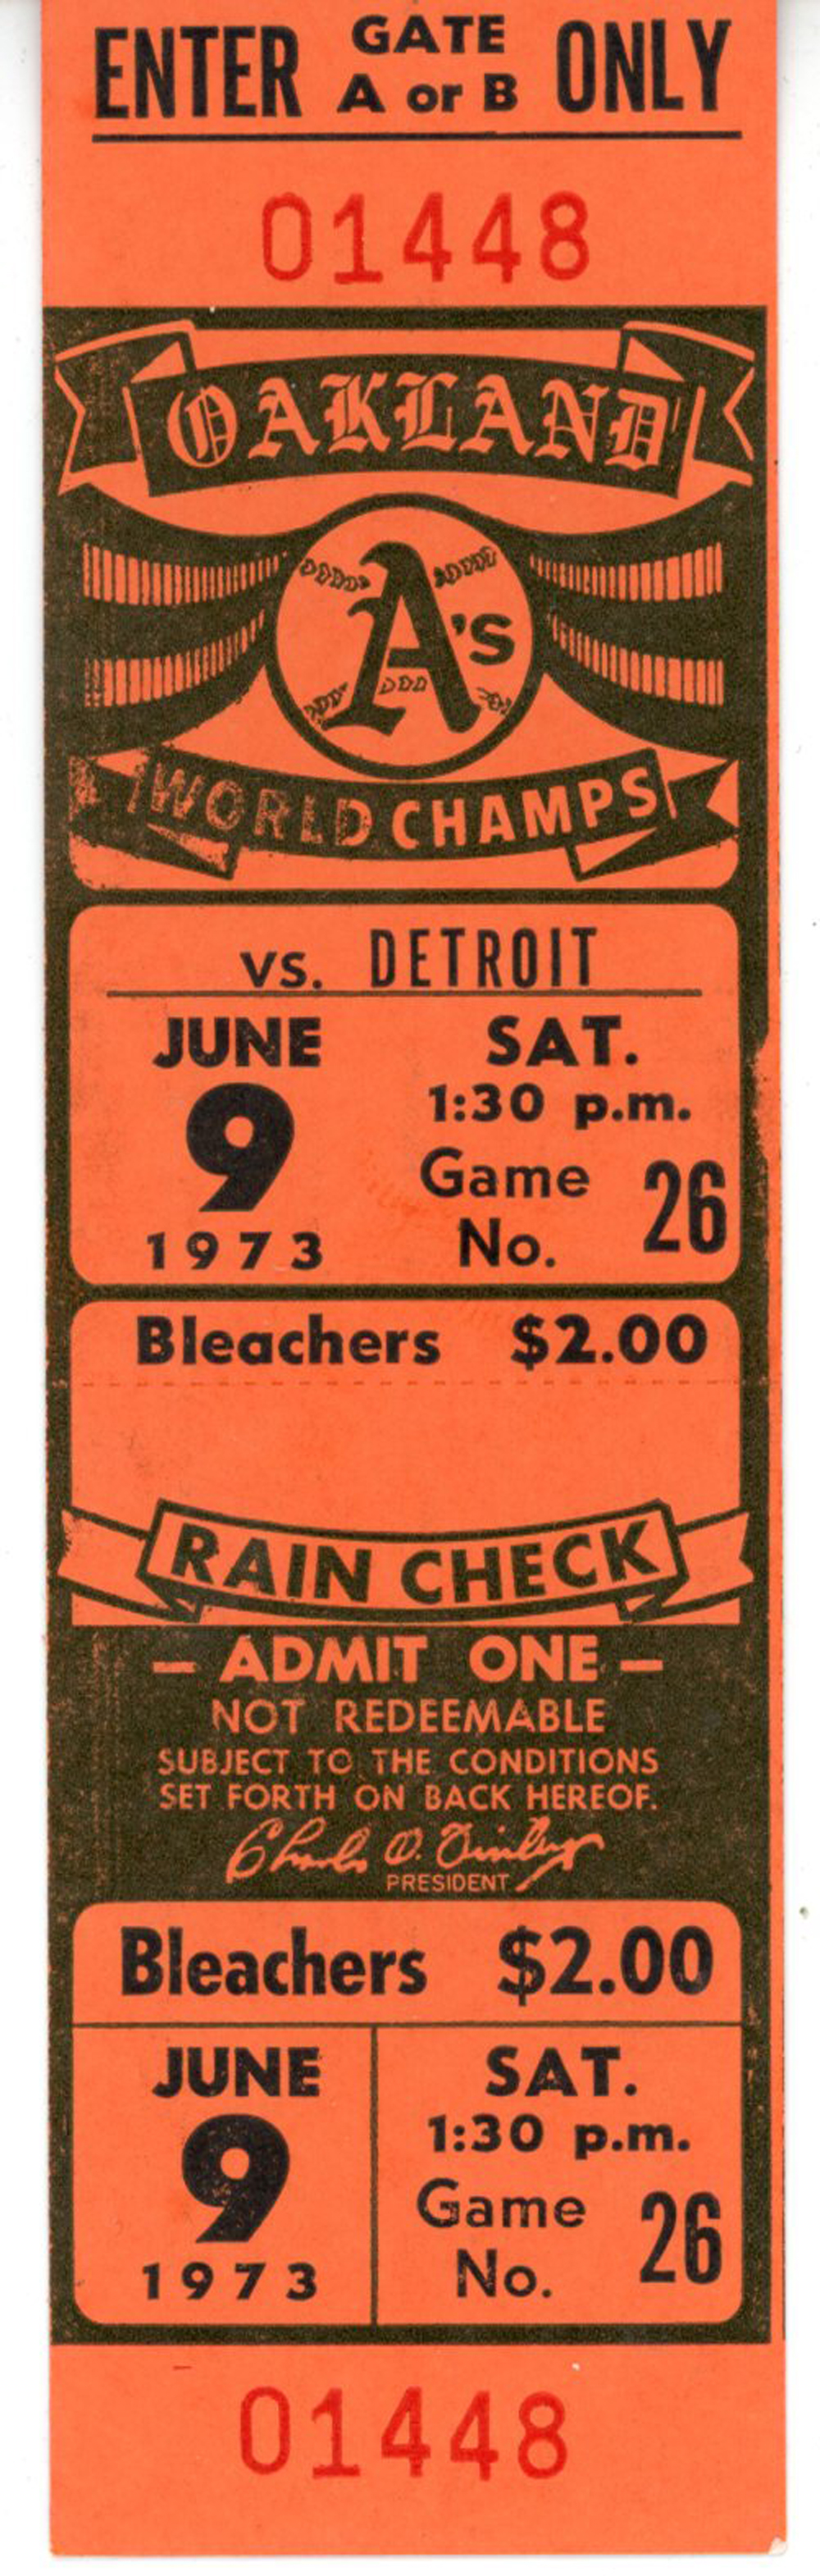 Oakland Athletics vs Detroit Tigers June 9, 1973 Ticket Stub